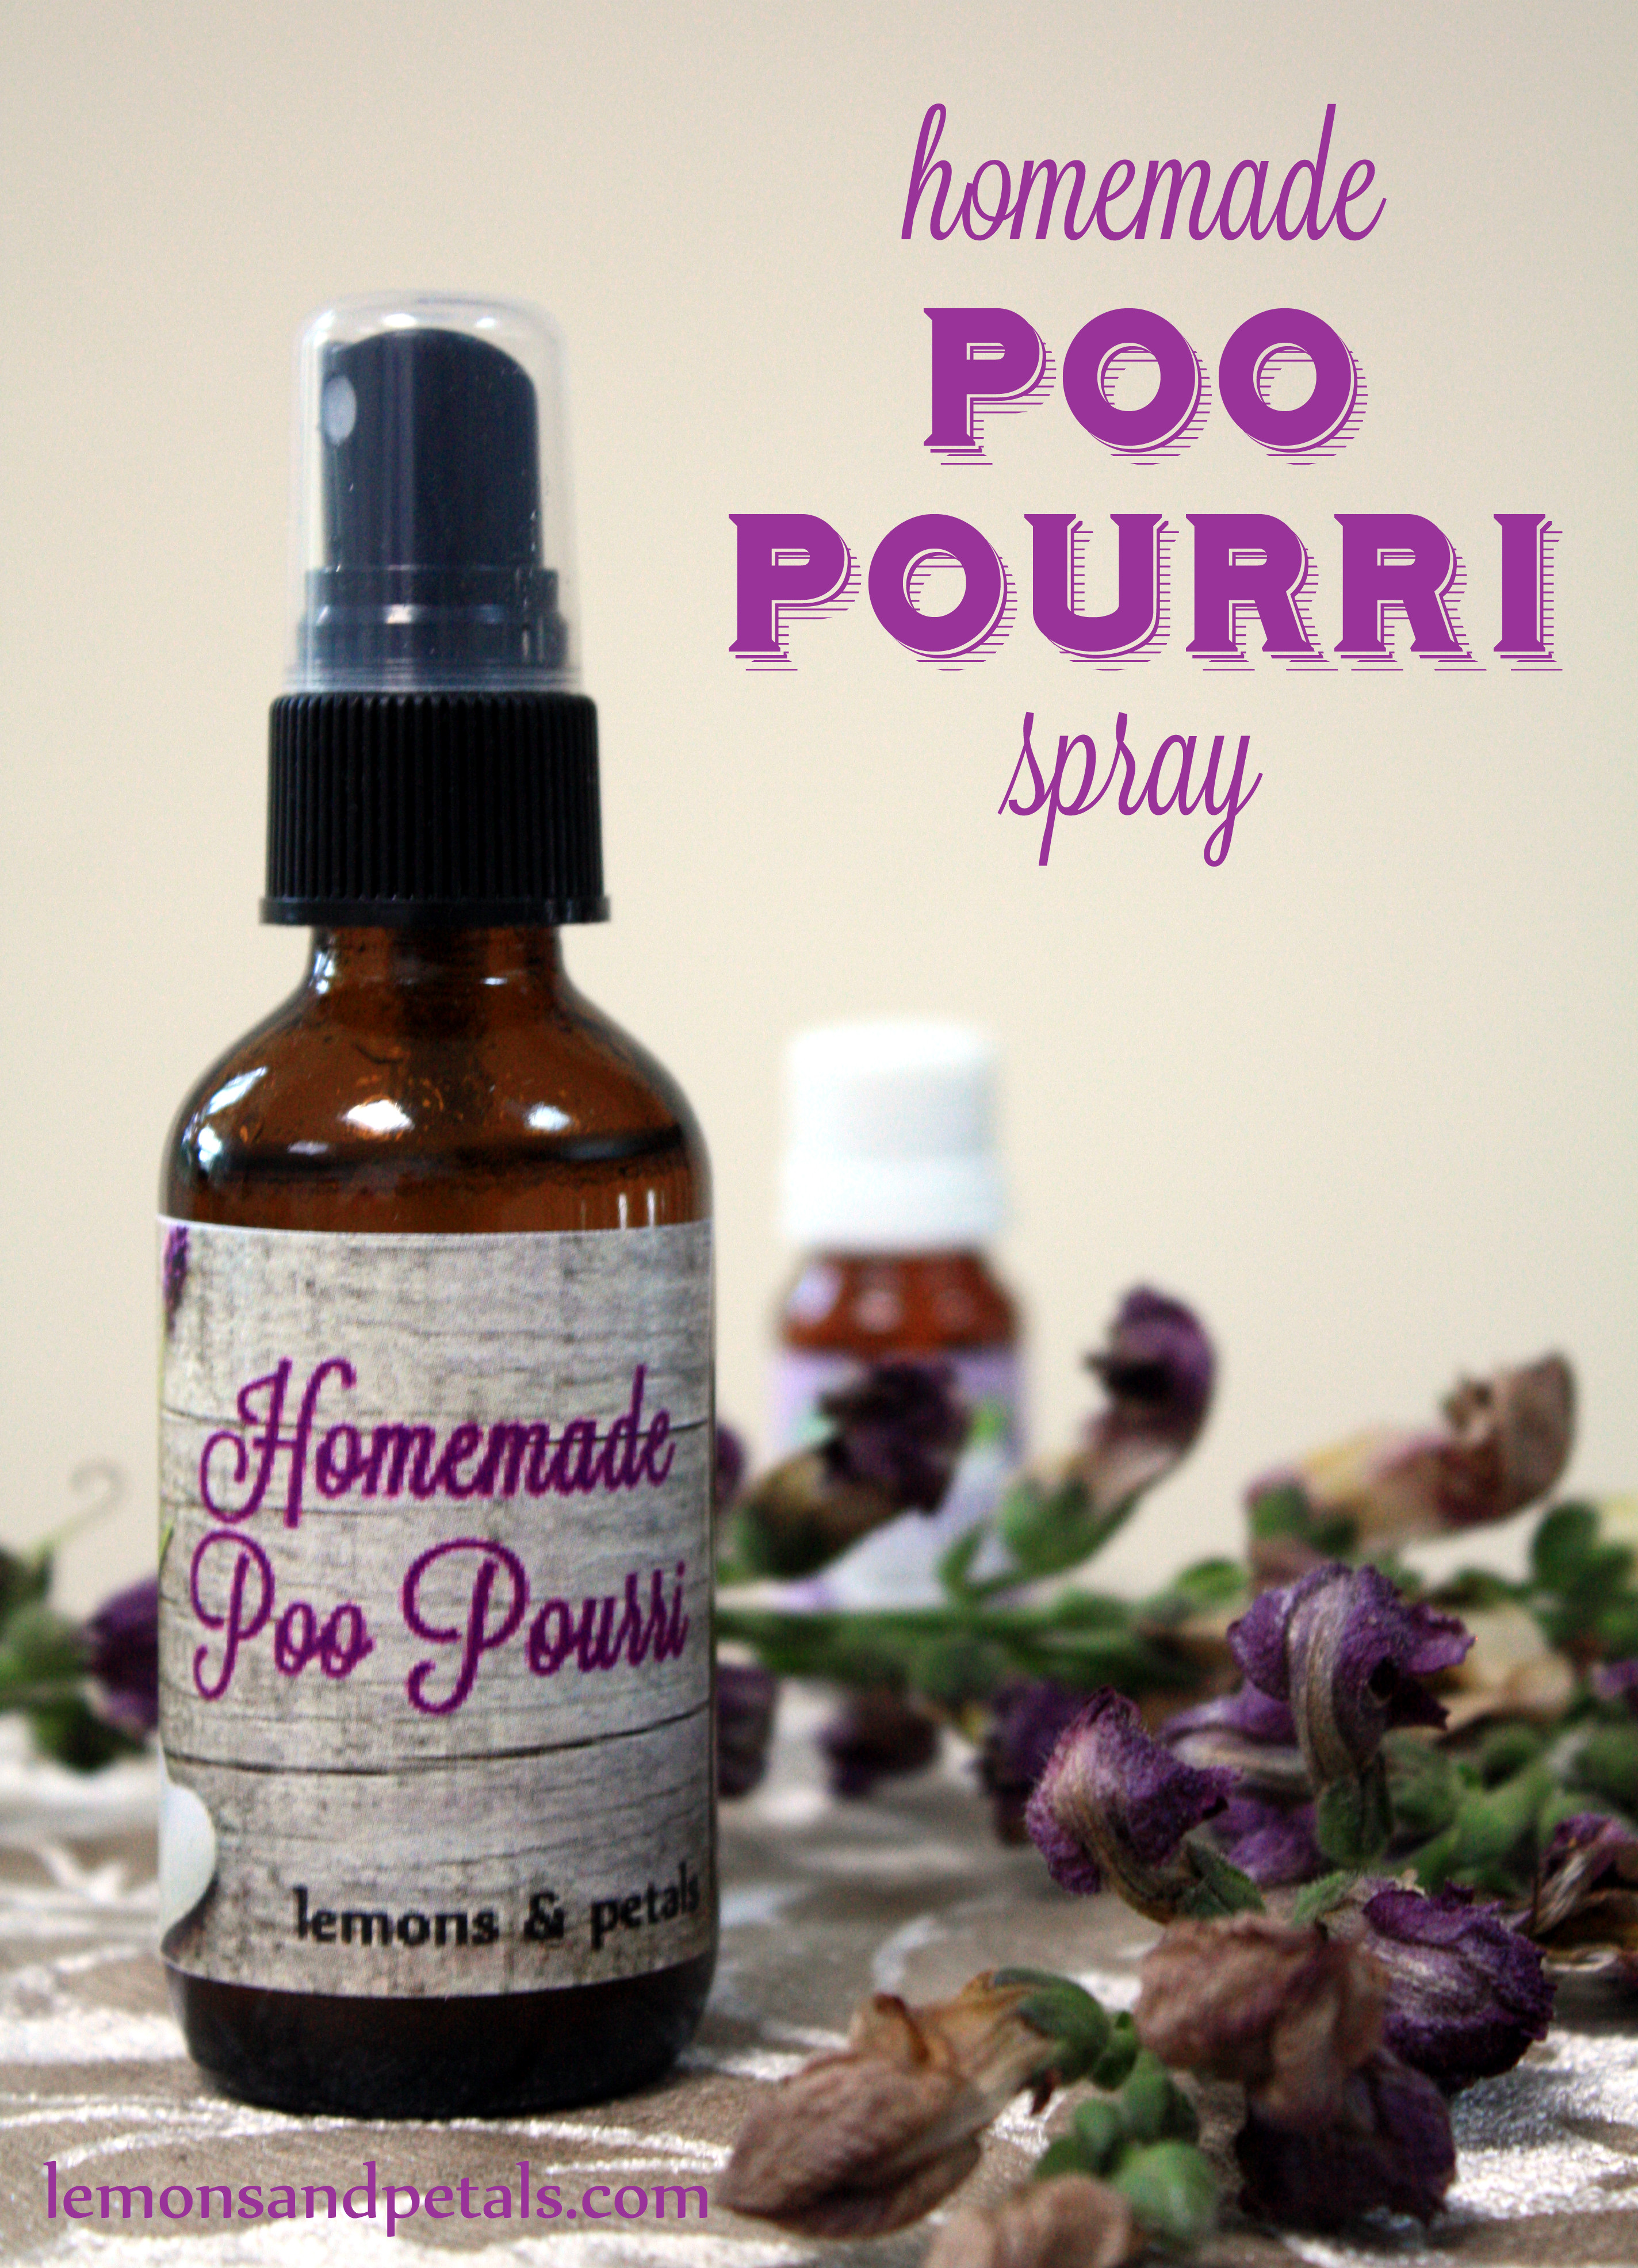 Best ideas about Poo Pourri DIY
. Save or Pin DIY Poo pourri Spray Now.